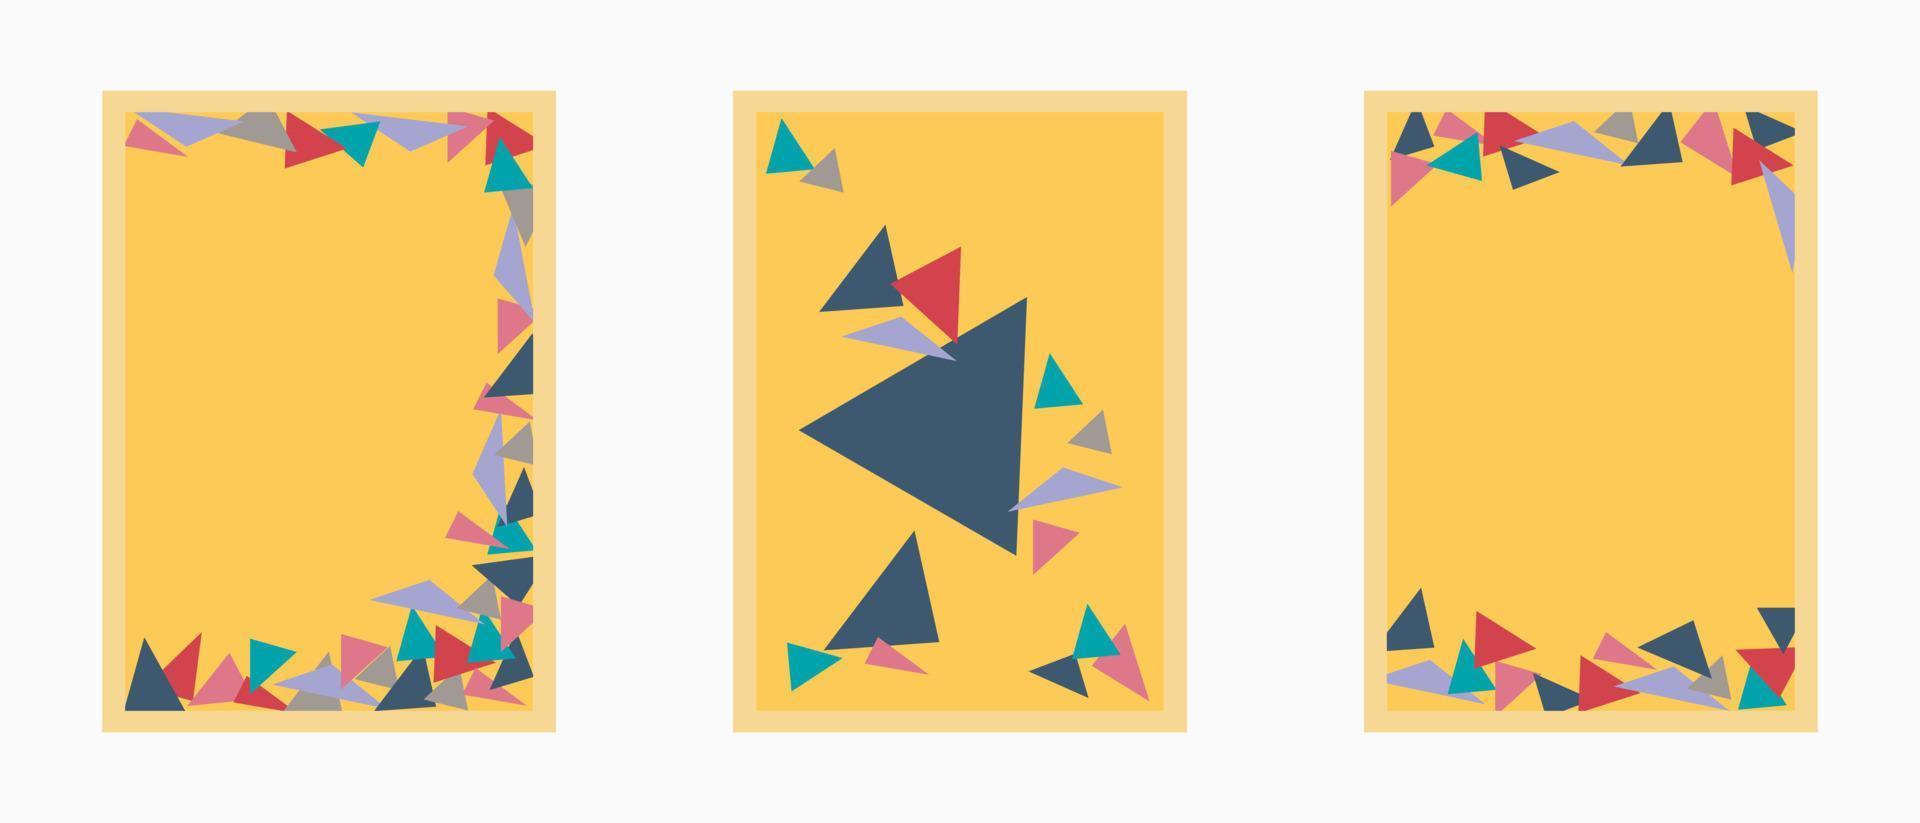 Bonito fondo triangular colorido con resúmenes para carteles, portadas, tarjetas, etc. vector